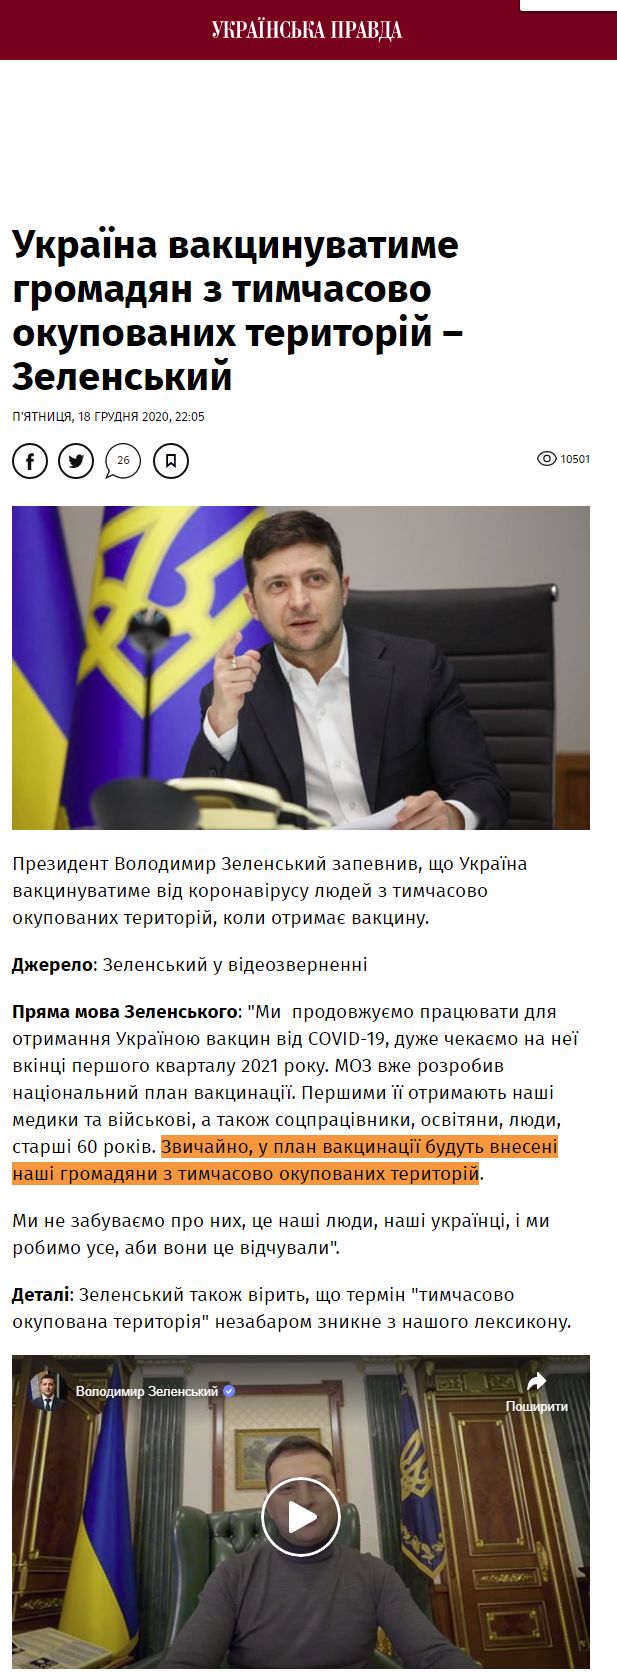 https://www.pravda.com.ua/news/2020/12/18/7277503/